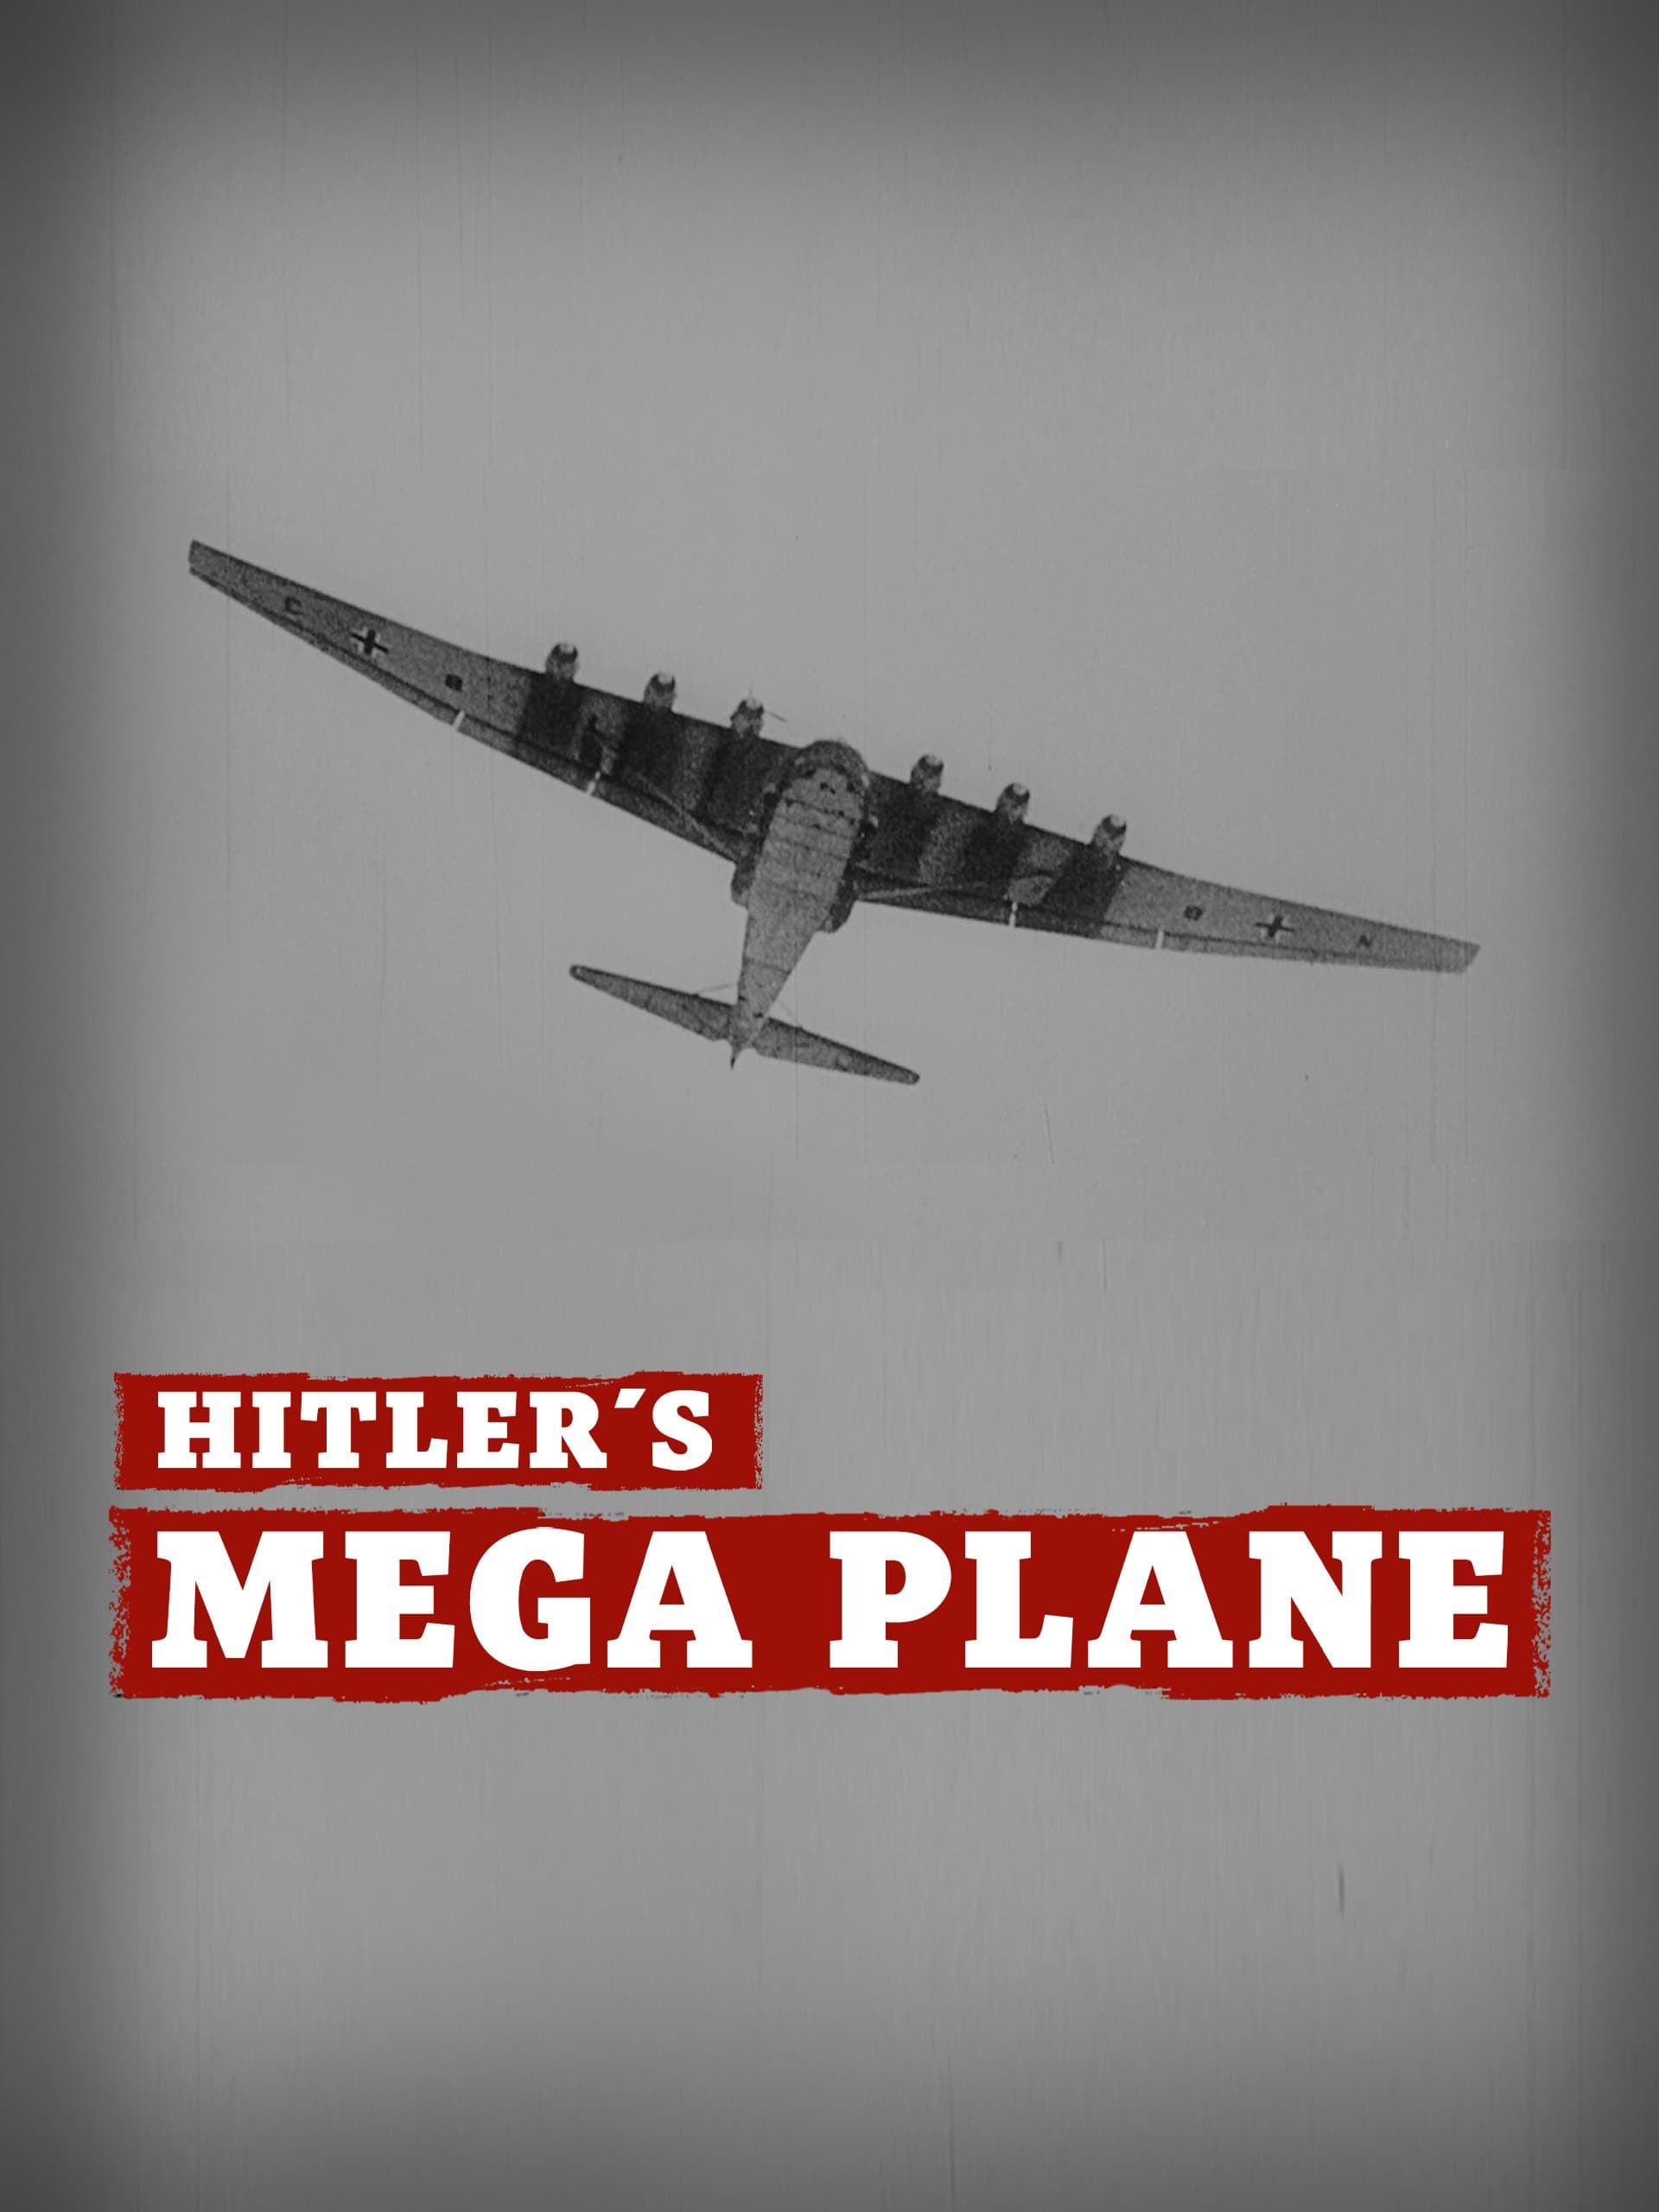 Hitler's Mega Plane